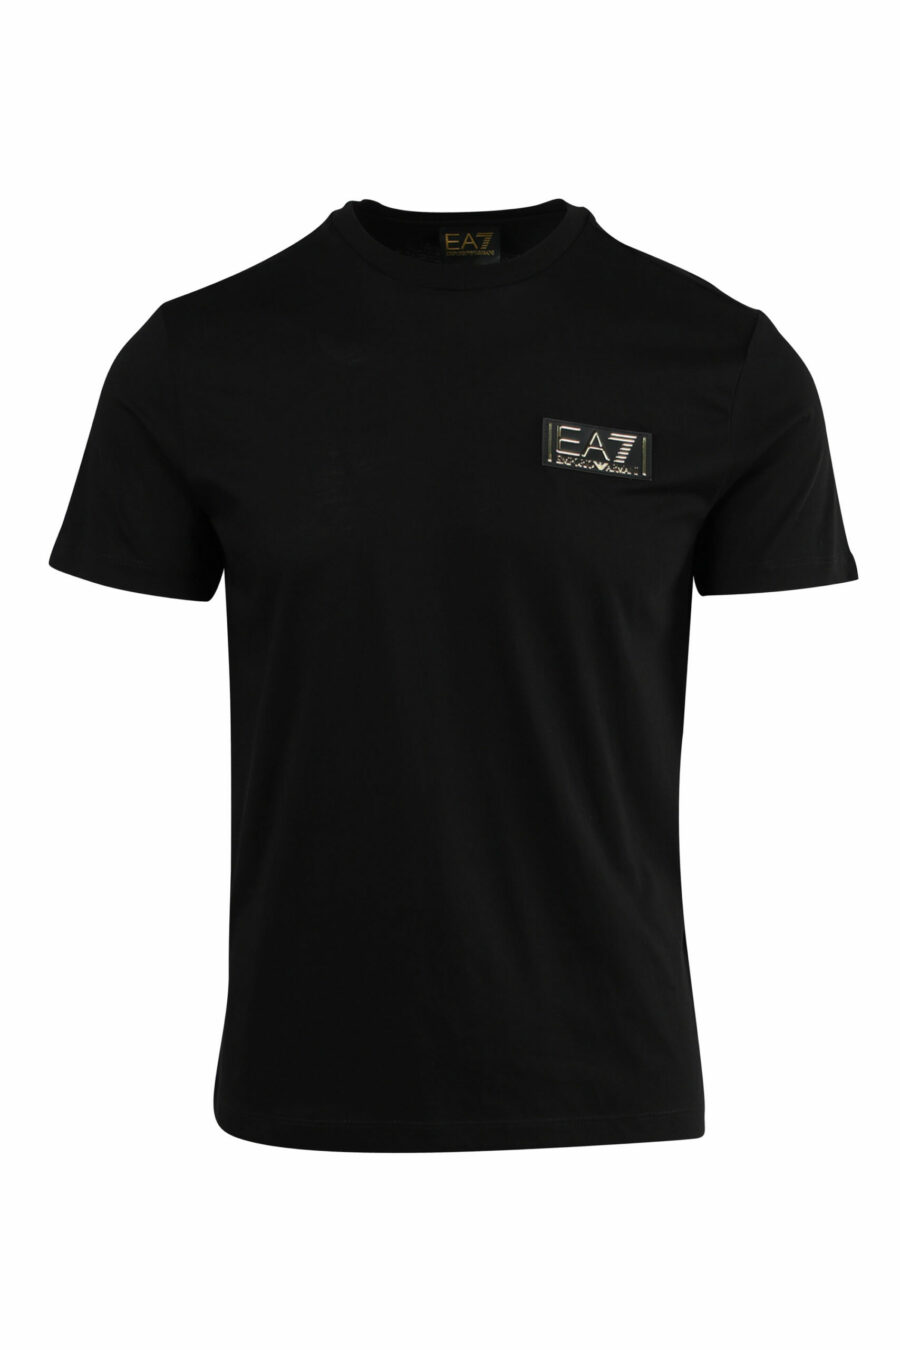 Camiseta negra con minilogo etiqueta "lux identity" dorado - 8057767515805 scaled